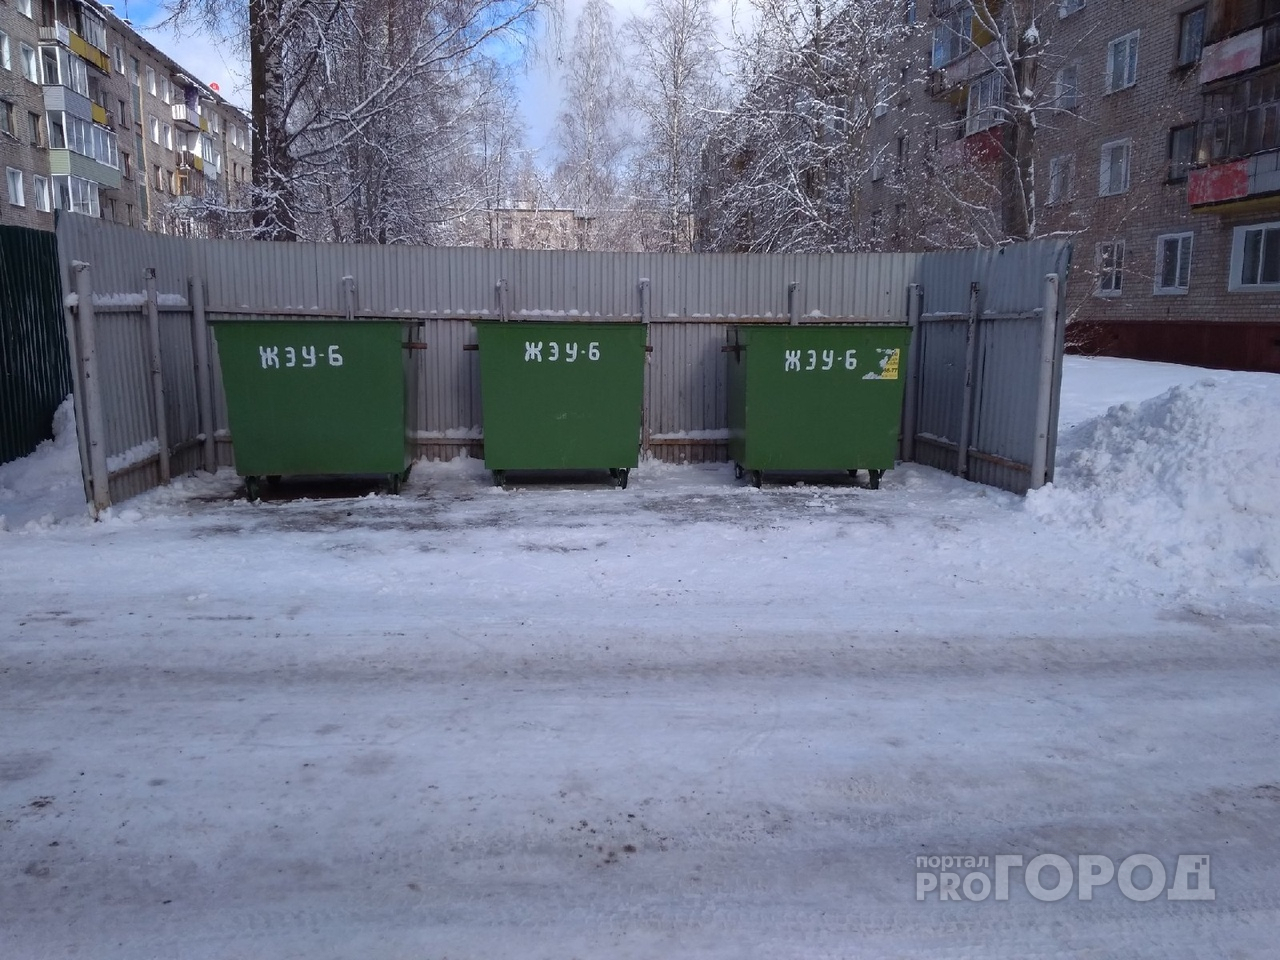 В Кирово-Чепецке очистили заваленную мусором площадку после обращения жителей в "Про Город"